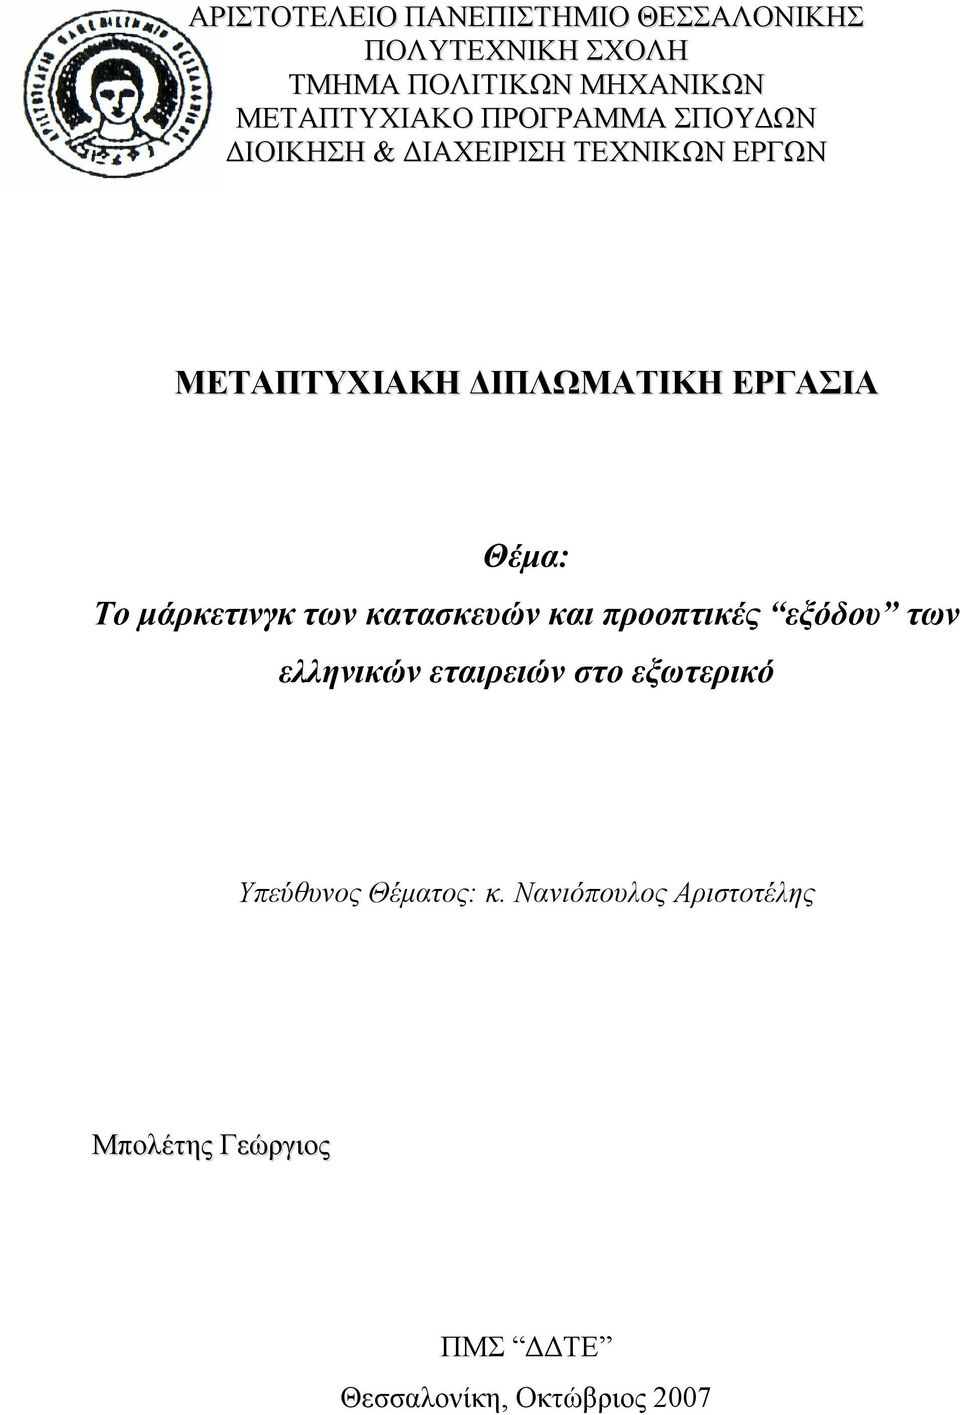 ΕΡΓΑΣΙΑ Θέμα: Το μάρκετινγκ των κατασκευών και προοπτικές εξόδου των ελληνικών εταιρειών στο